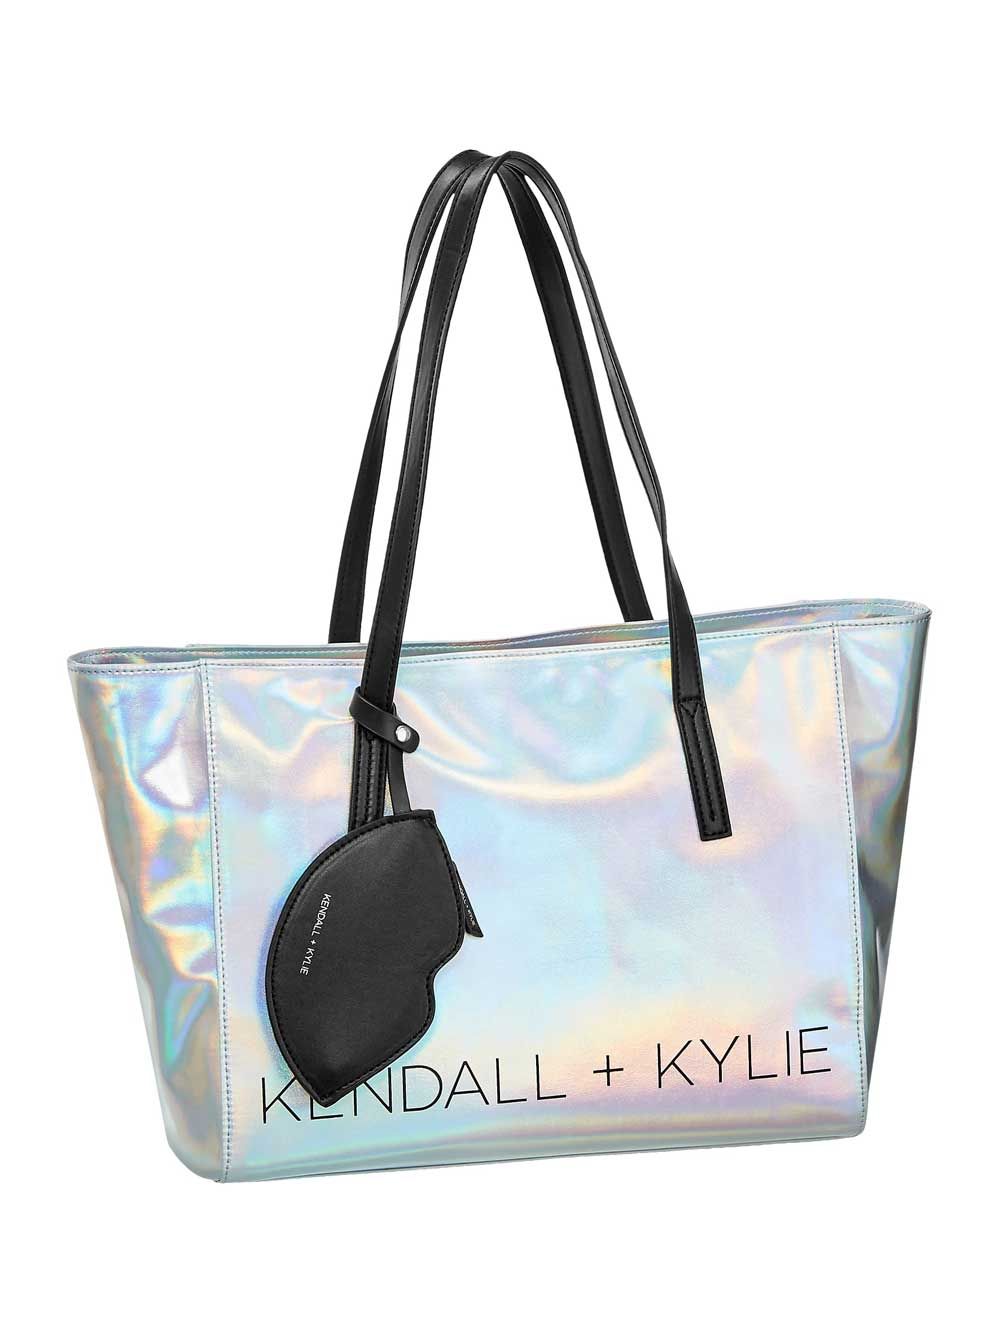 La colección bolsos exclusiva de Kendall+Kylie para Deichmann - Stilo